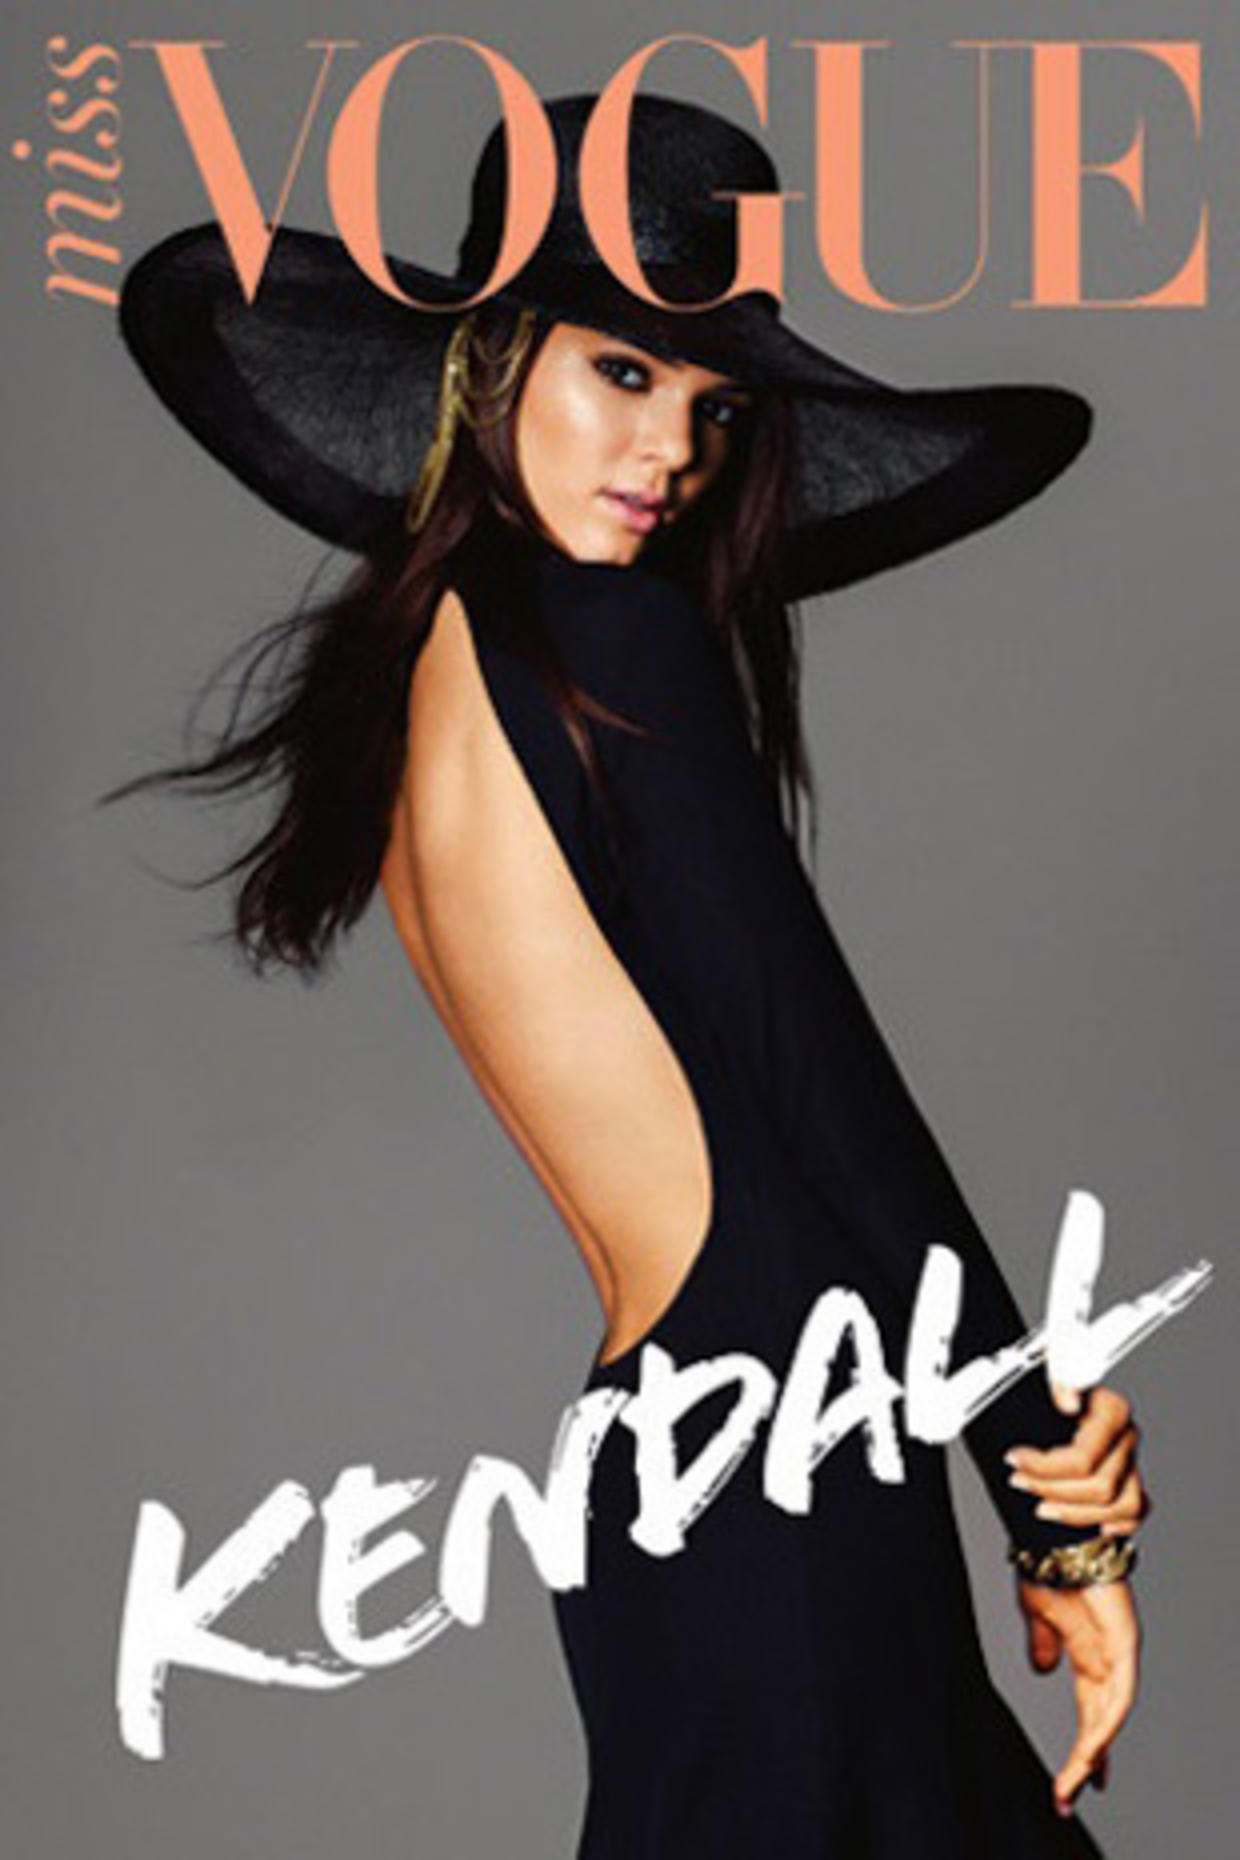 Kardashian Sister Kendall Jenner Lands Australian Miss Vogue Cover Cbs News 